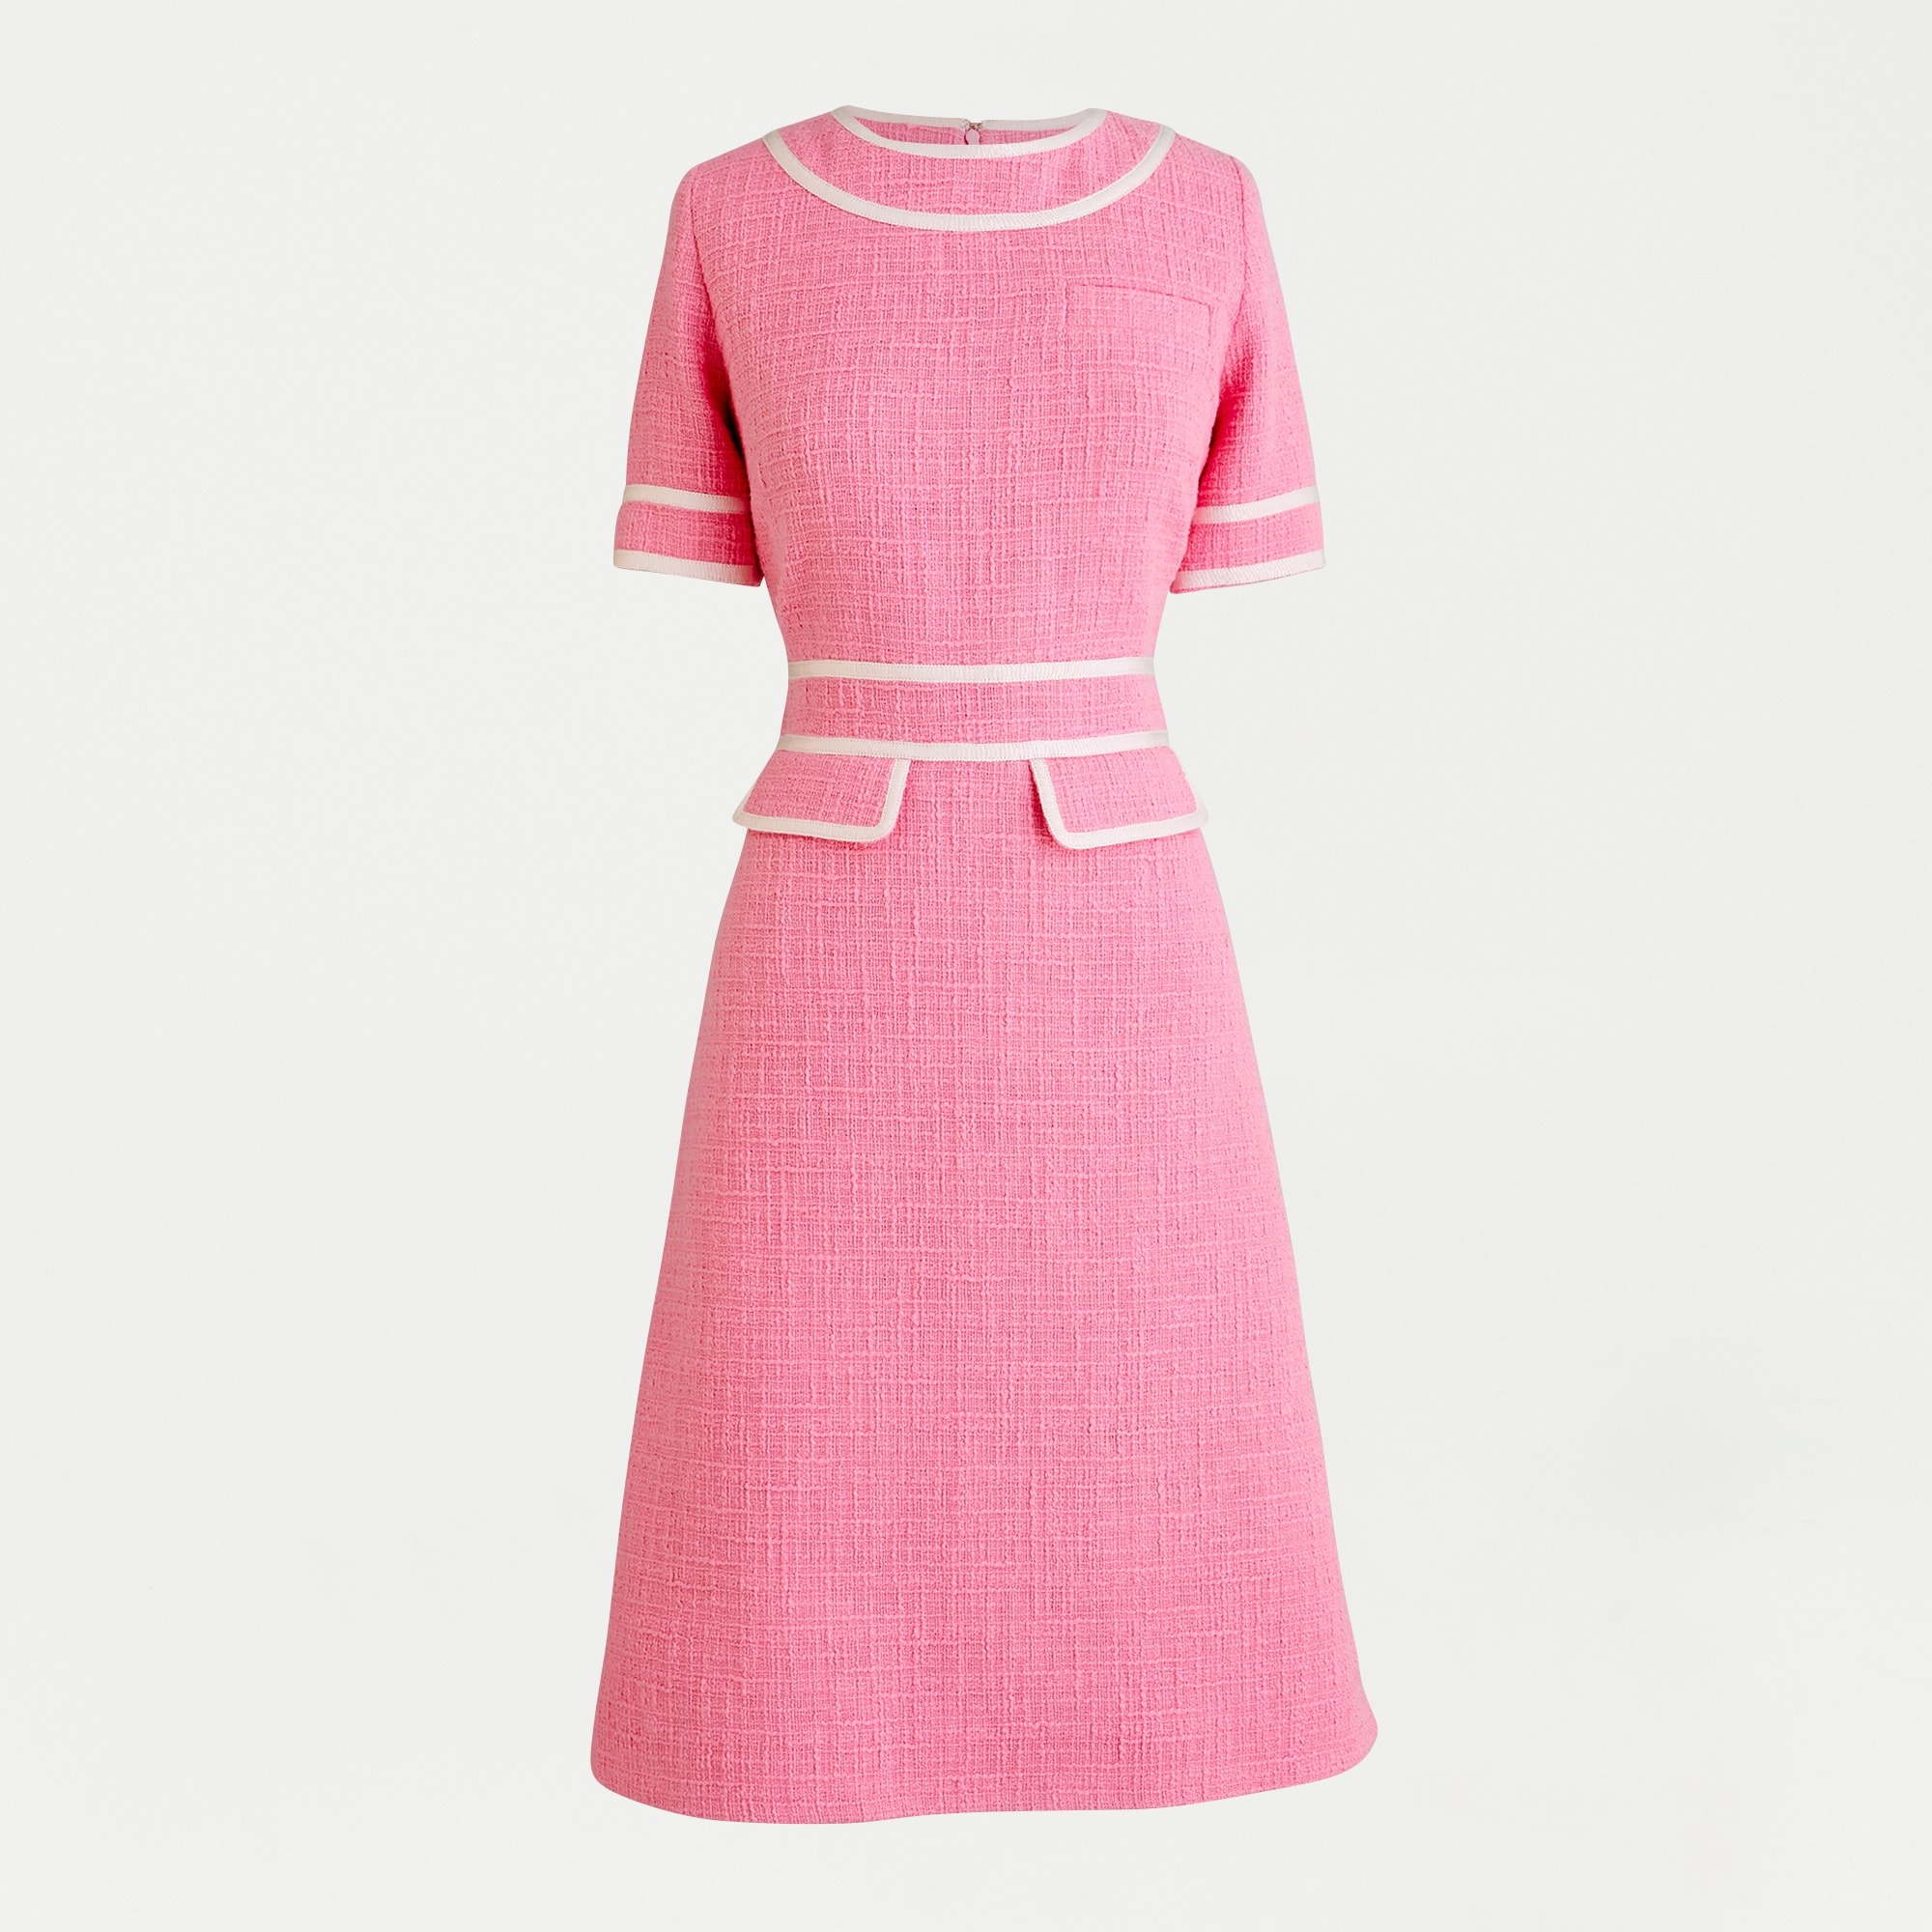 tweed pink dress